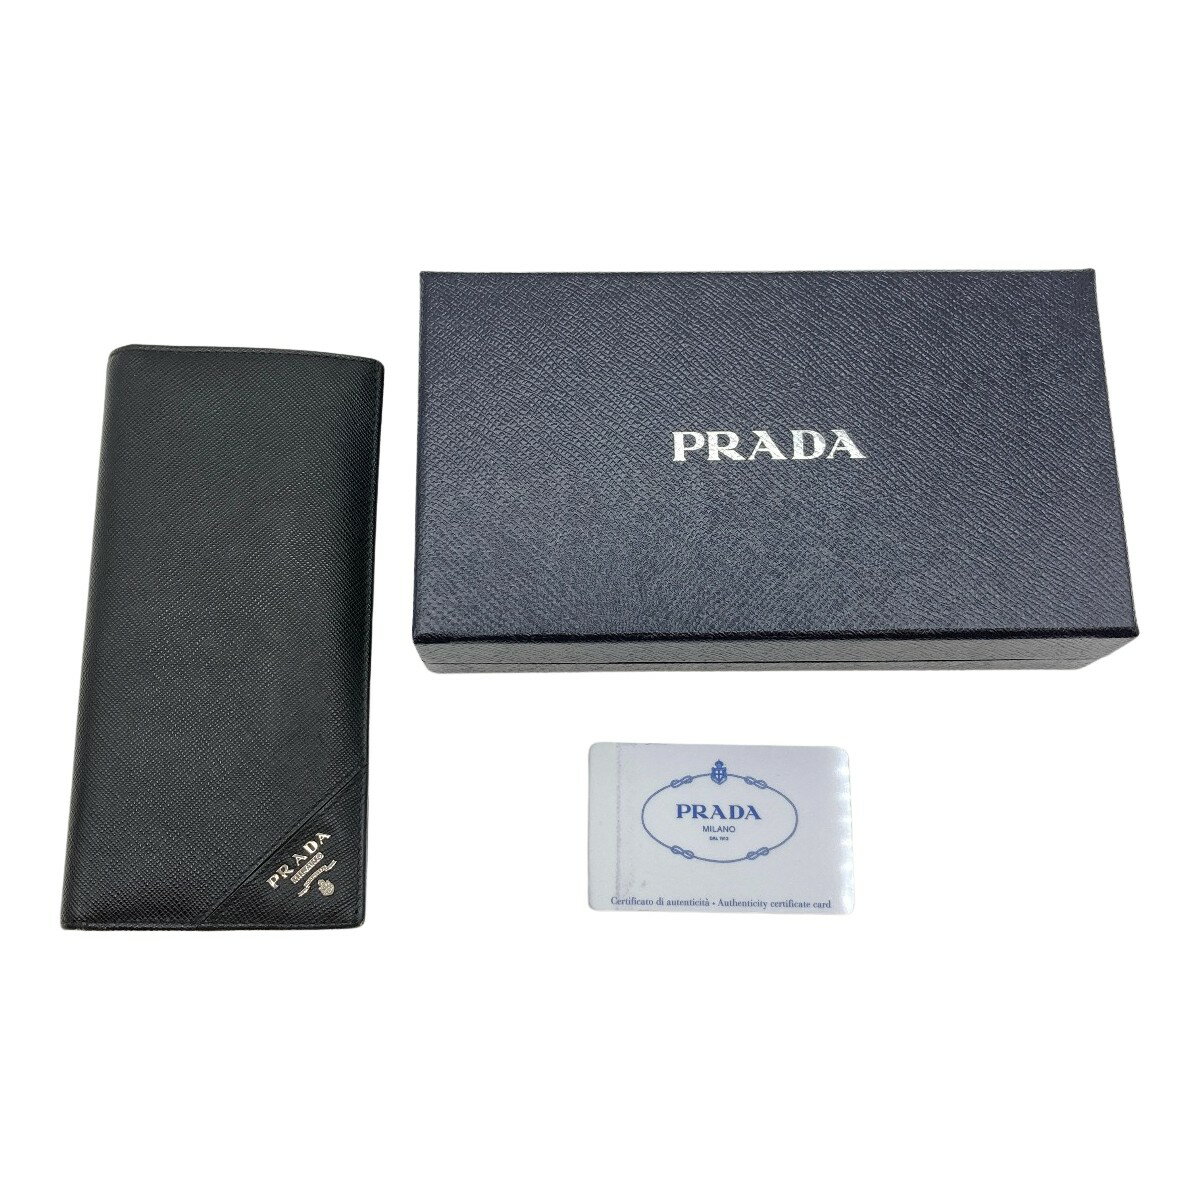 ◎◎【中古】PRADA プラダ 長財布 財布 サフィアーノ メタル 箱付 2MV836 ブラック Bランク